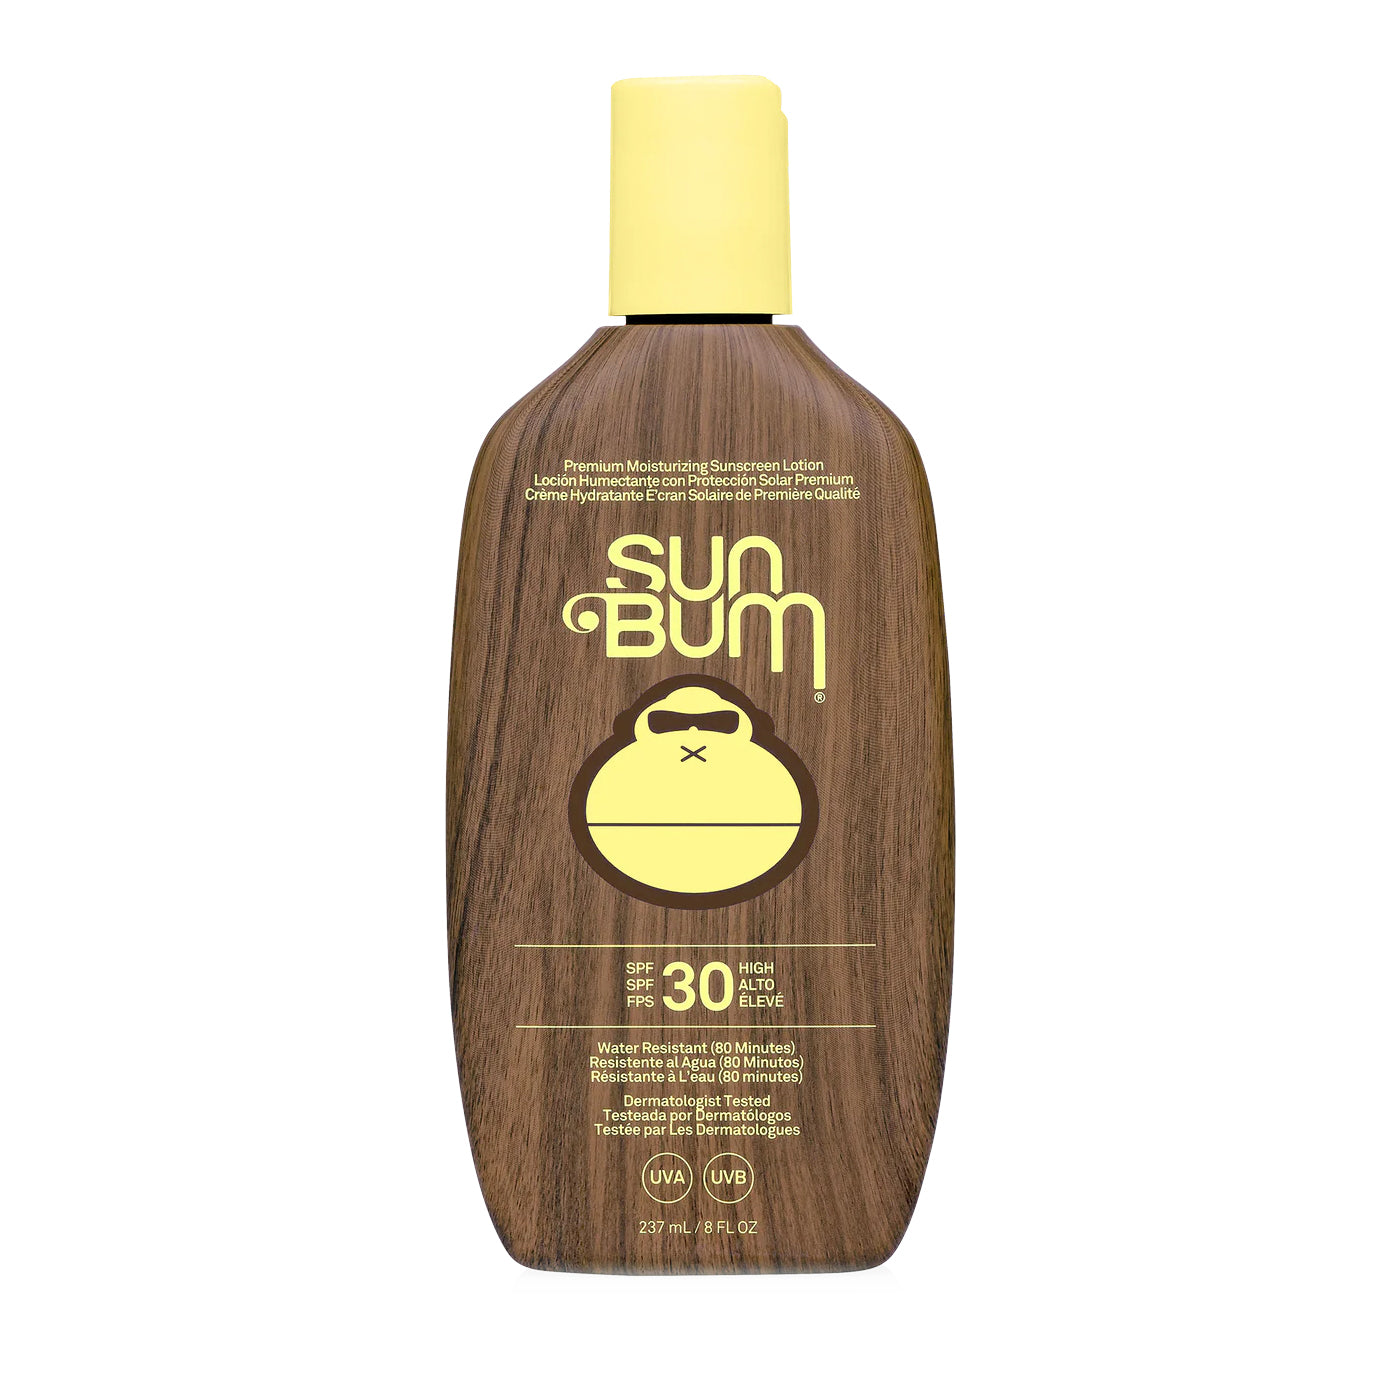 Sunbum | SPF 30 Sunscreen Lotion | Original 8oz